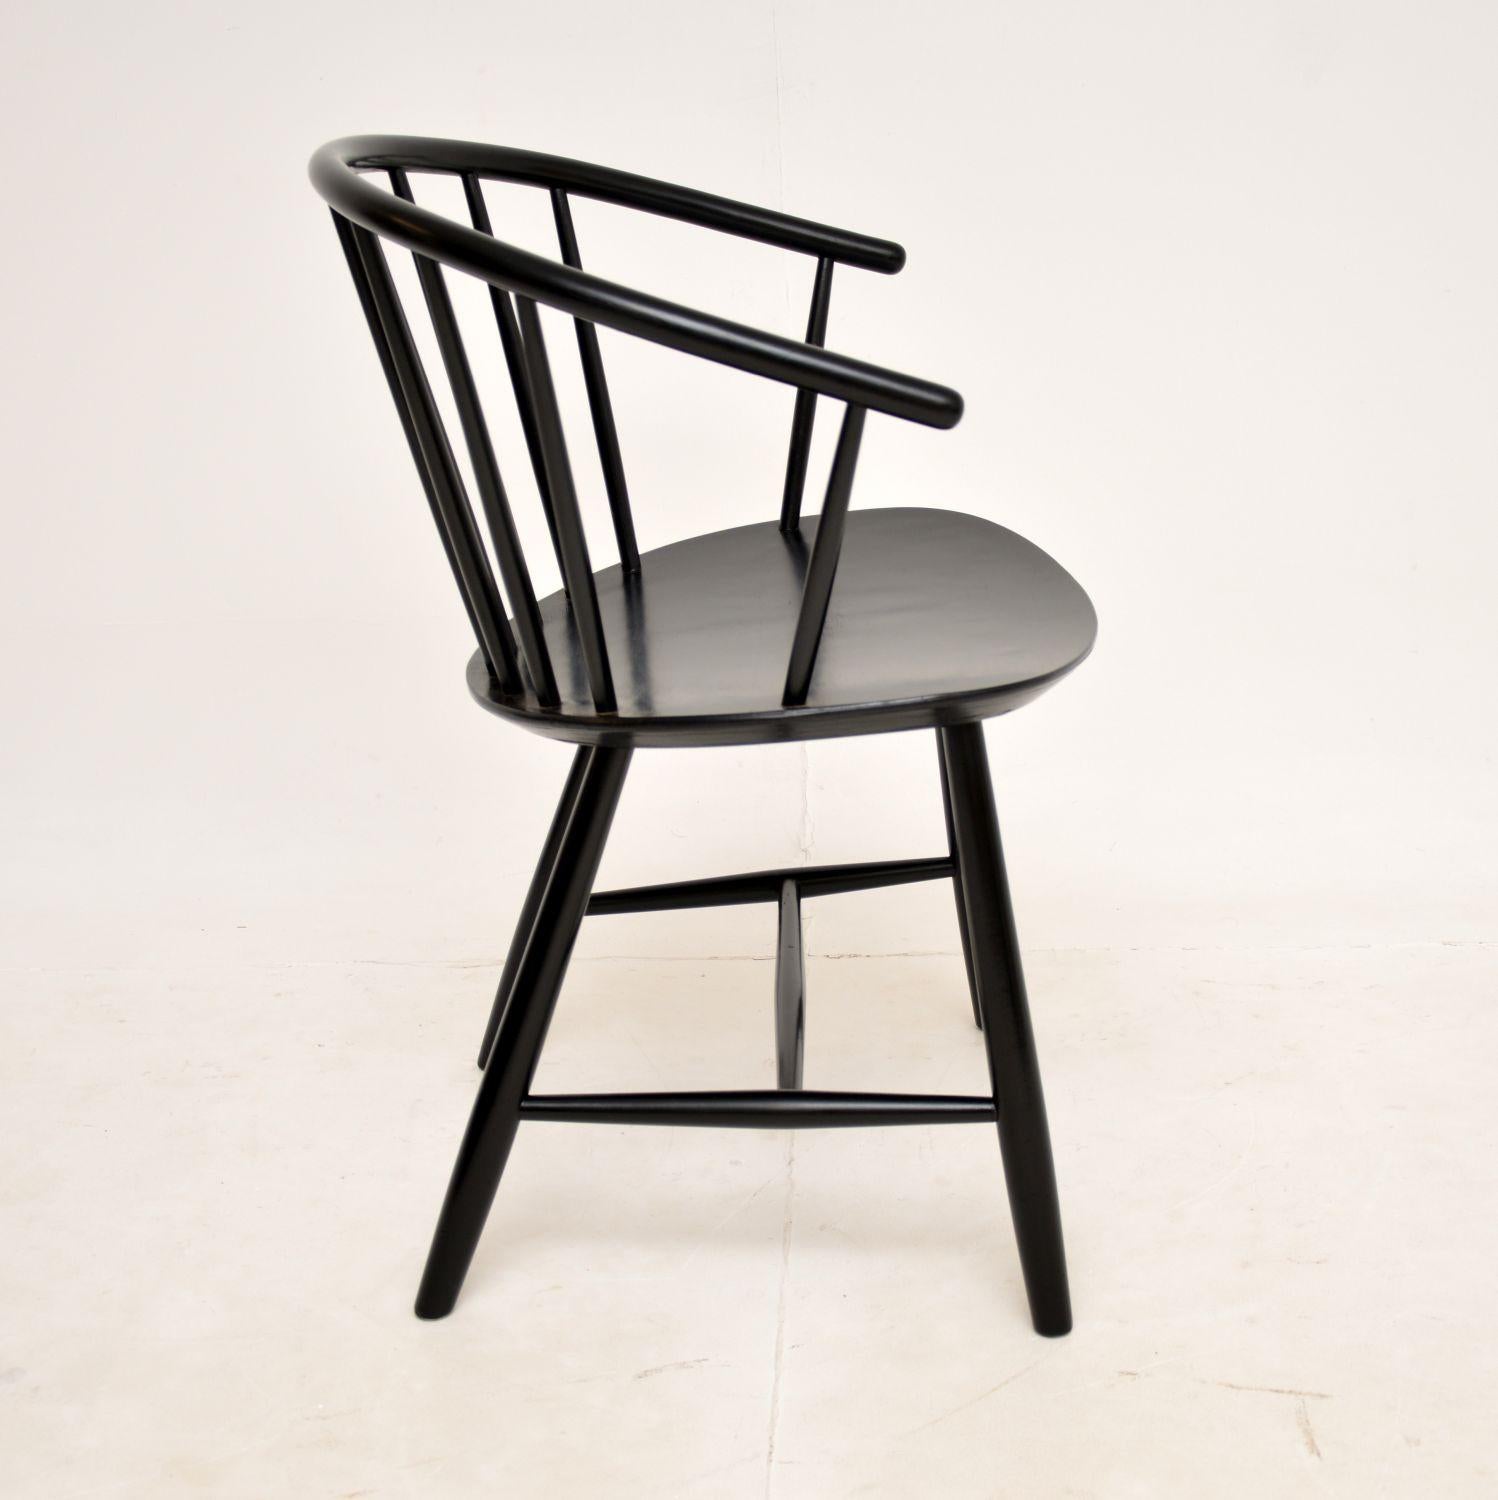 Un joli fauteuil ébonisé vintage, fabriqué au Danemark par Fredericia et datant des années 1970-80. Il a été conçu par Ejvind Johansson.

Il est d'une qualité étonnante et d'une taille très utile. Il serait parfait dans divers contextes comme